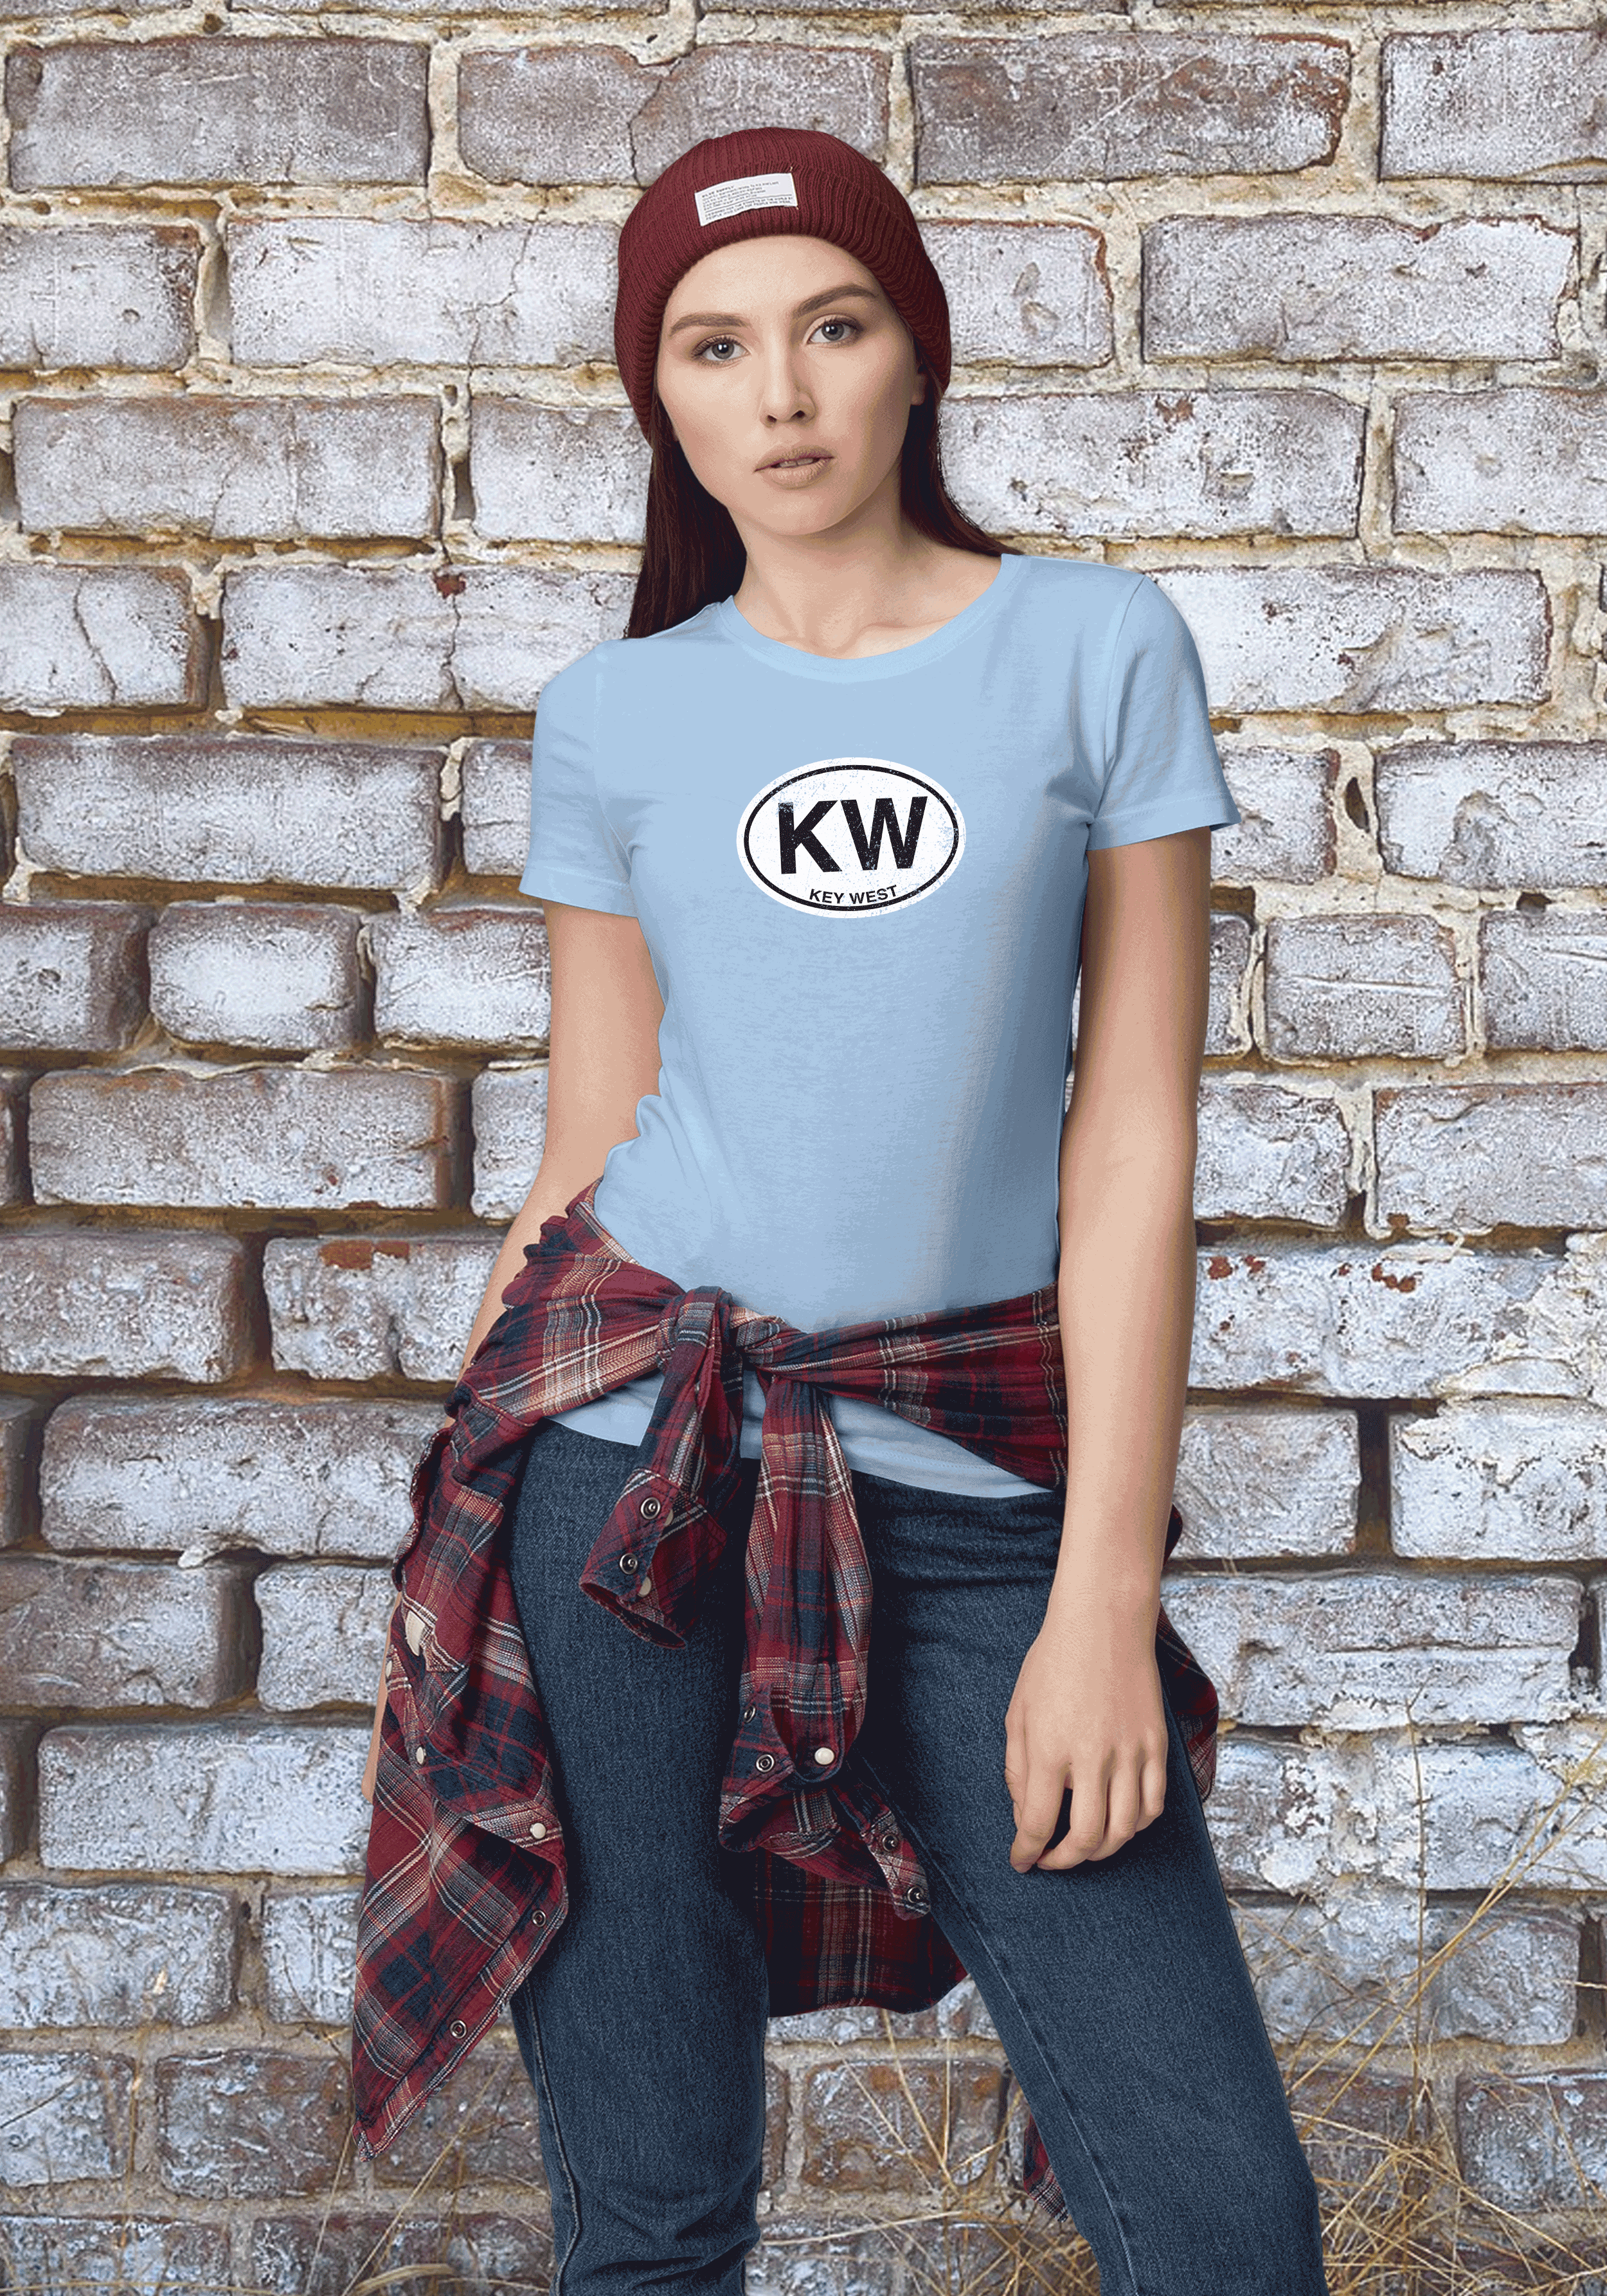 Key West Women's Classic T-Shirt Souvenirs - My Destination Location